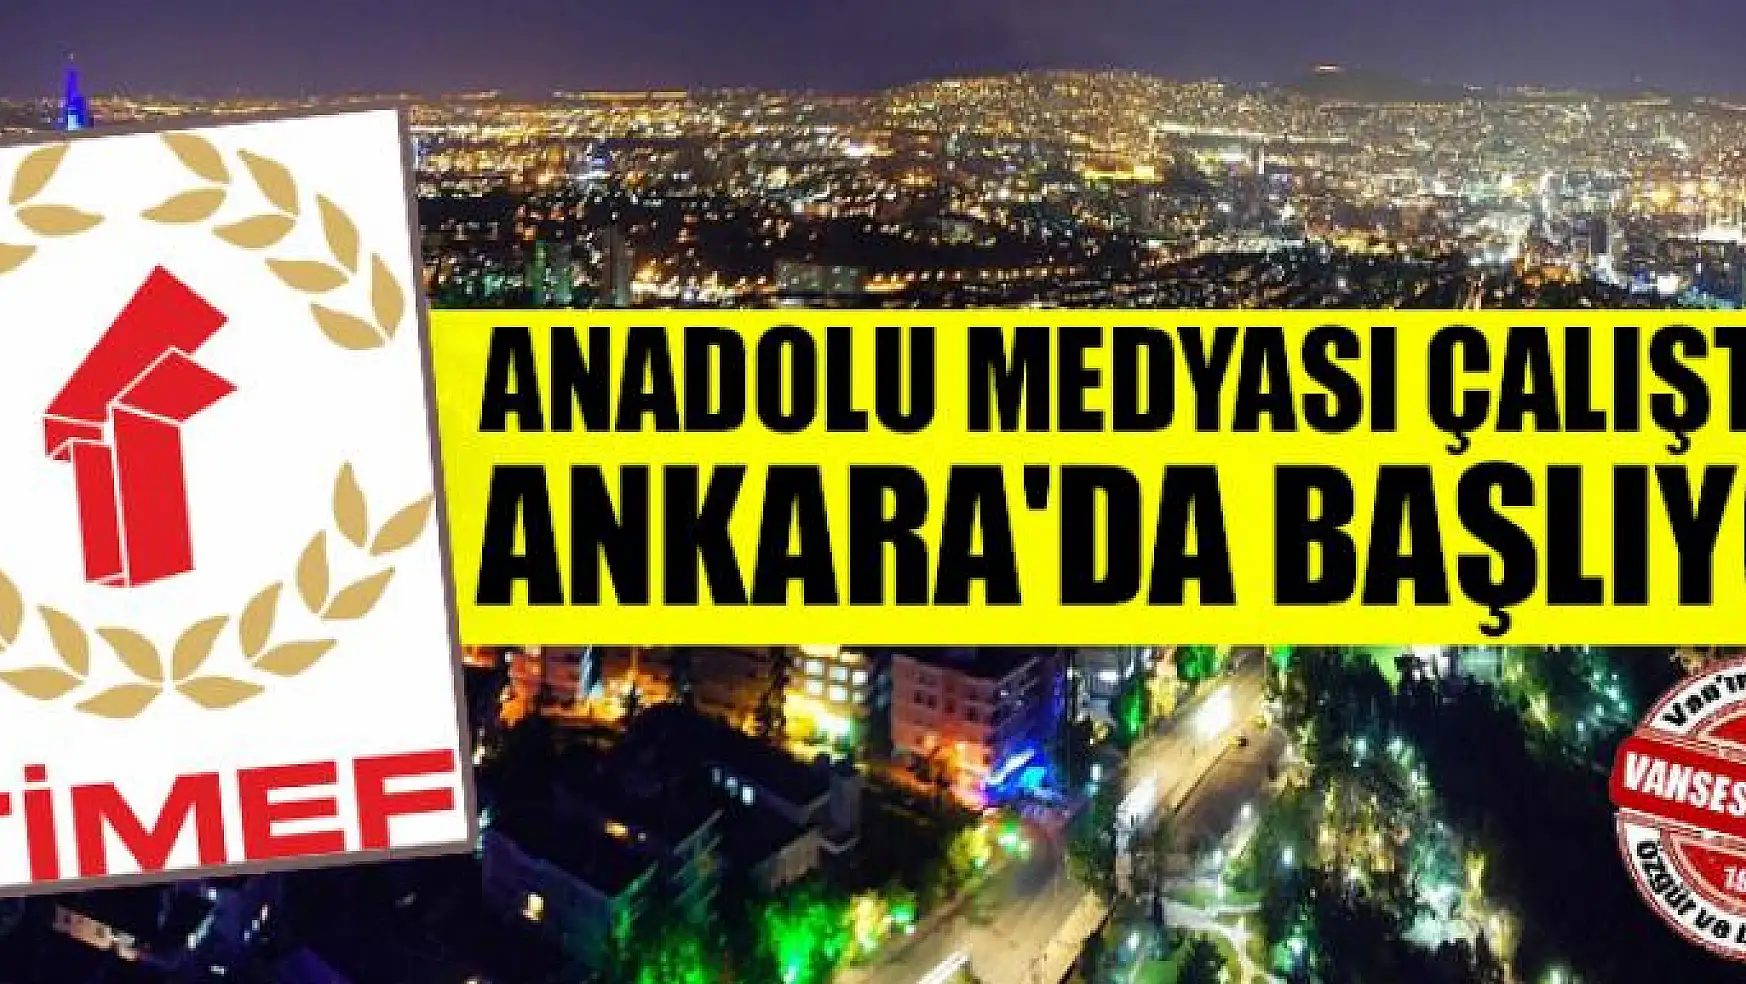 Anadolu Medyası Çalıştayı Ankara'da Başlıyor